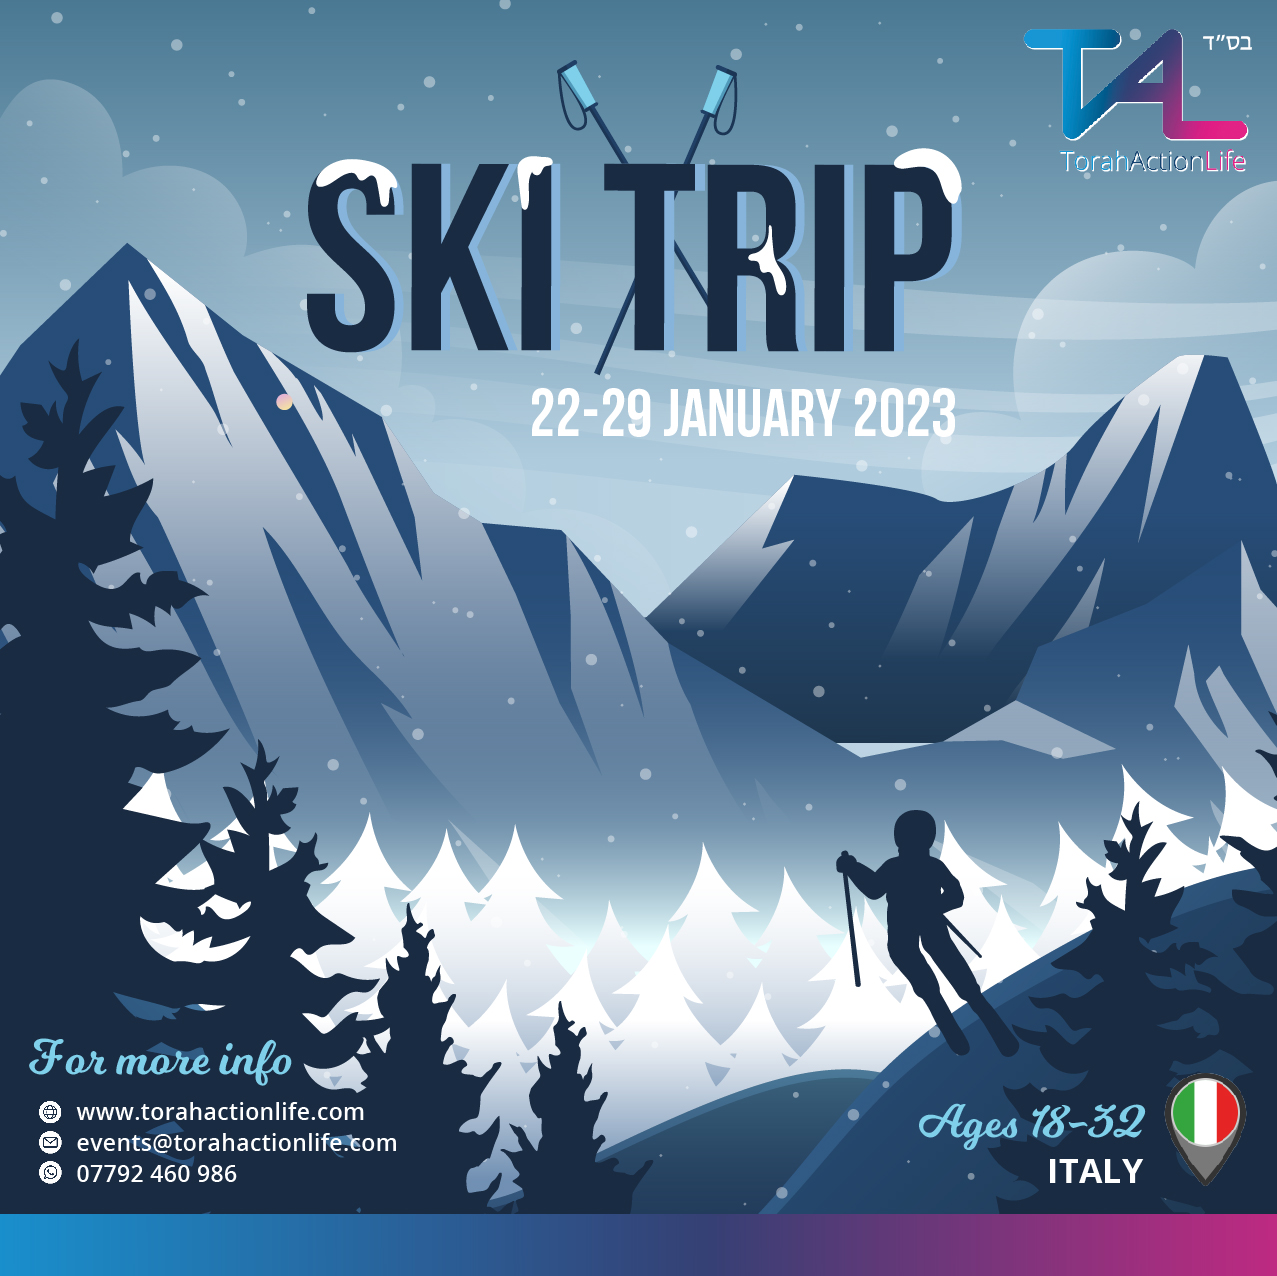 Ski Trip 2023